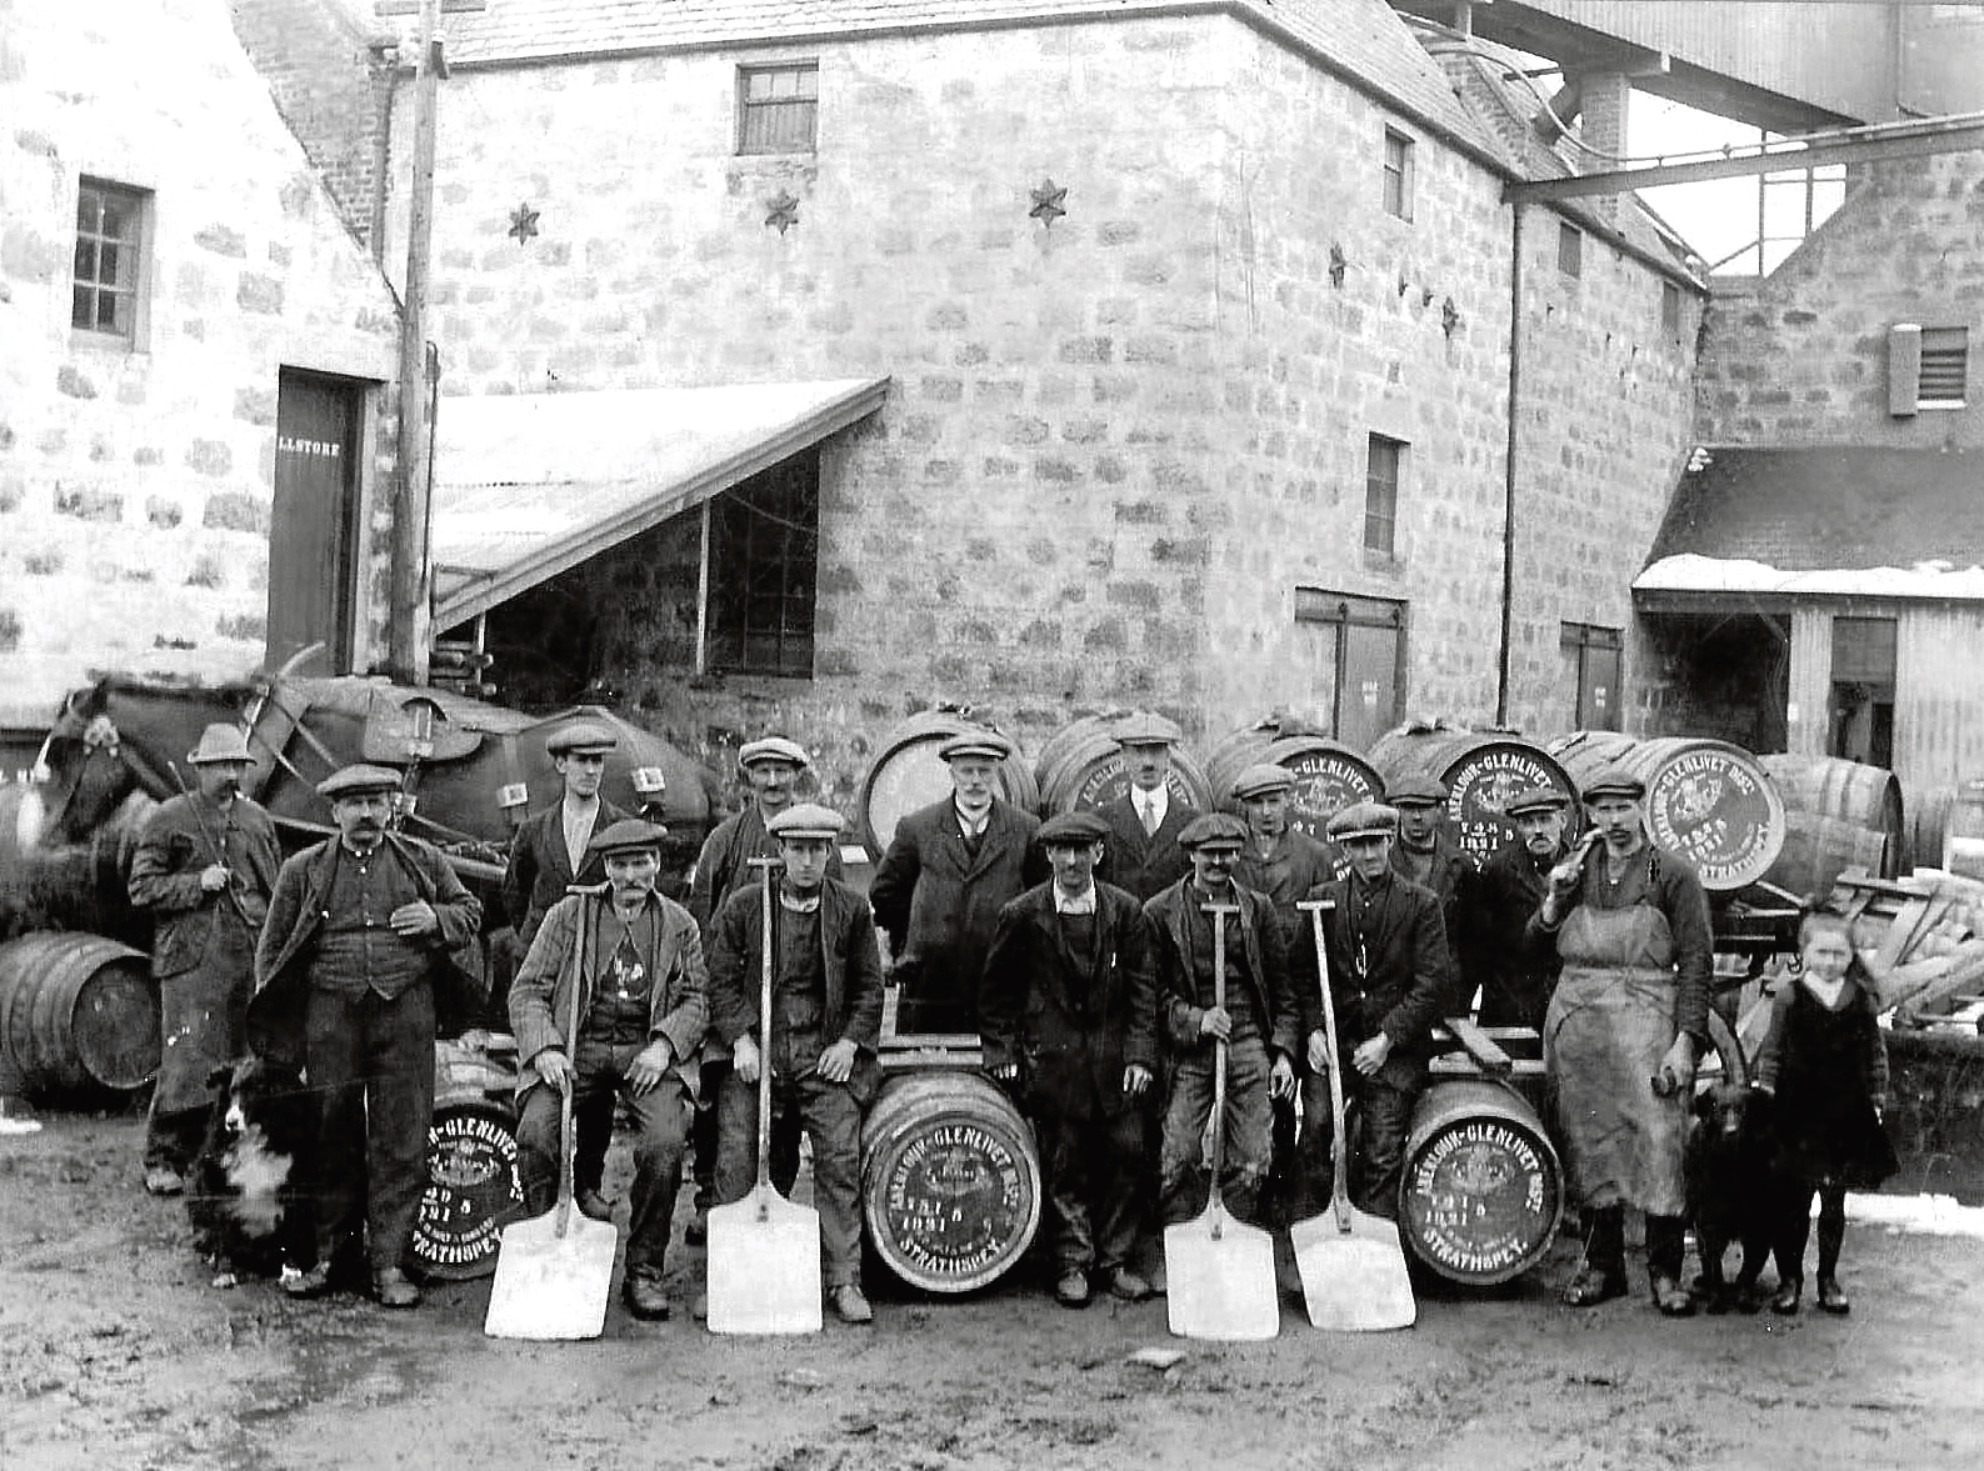 Aberlour Distillery, 1921.

David Northcroft piece